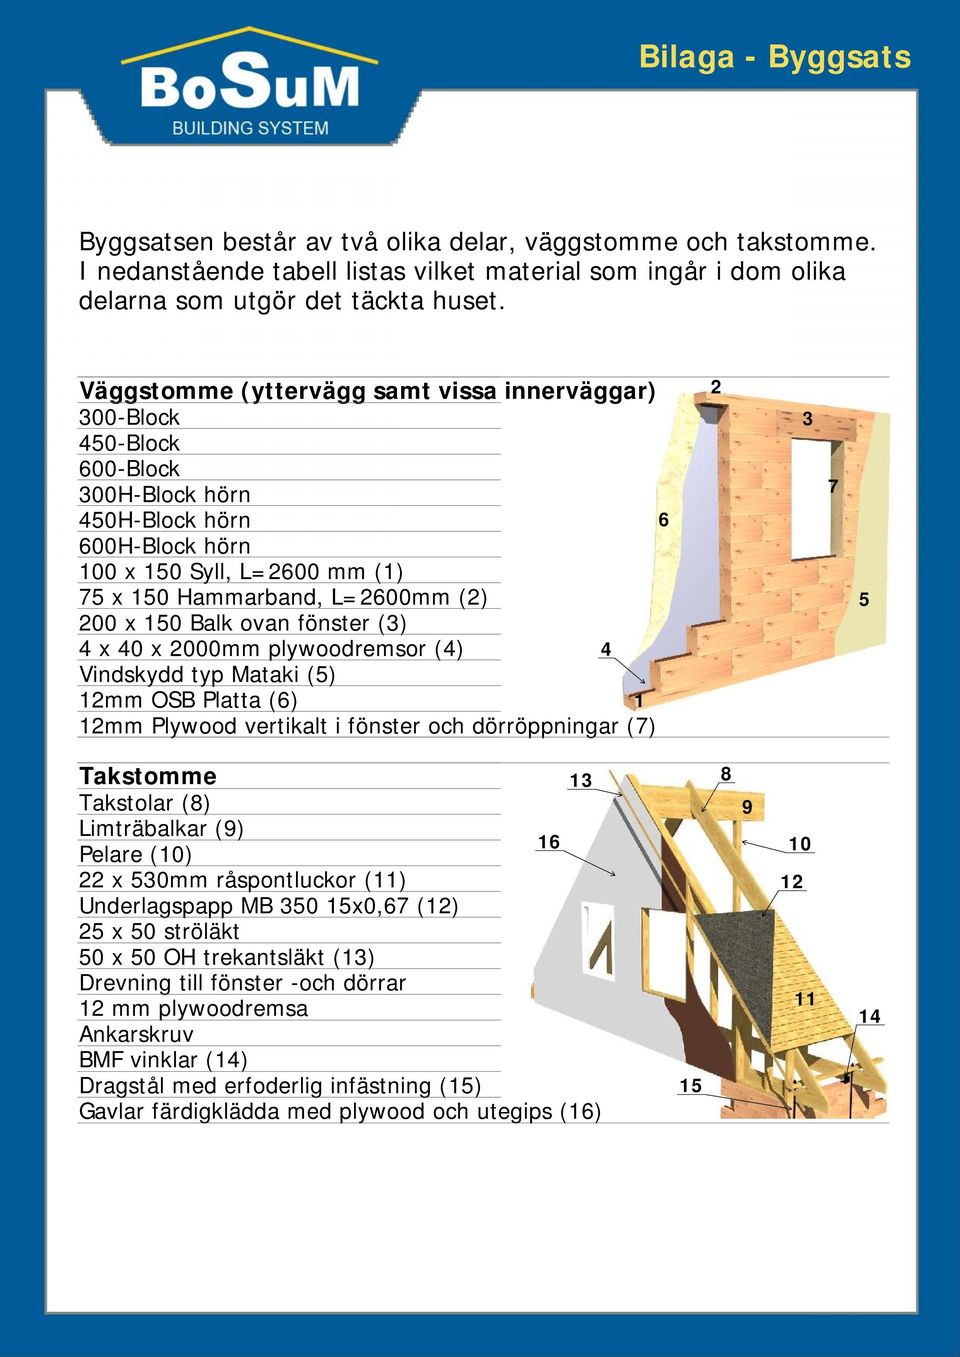 000mm plywoodremsor () Vindskydd typ Mataki () mm OSB Platta () mm Plywood vertikalt i fönster och dörröppningar () Takstomme Takstolar () Limträbalkar () Pelare (0) x 0mm råspontluckor ()